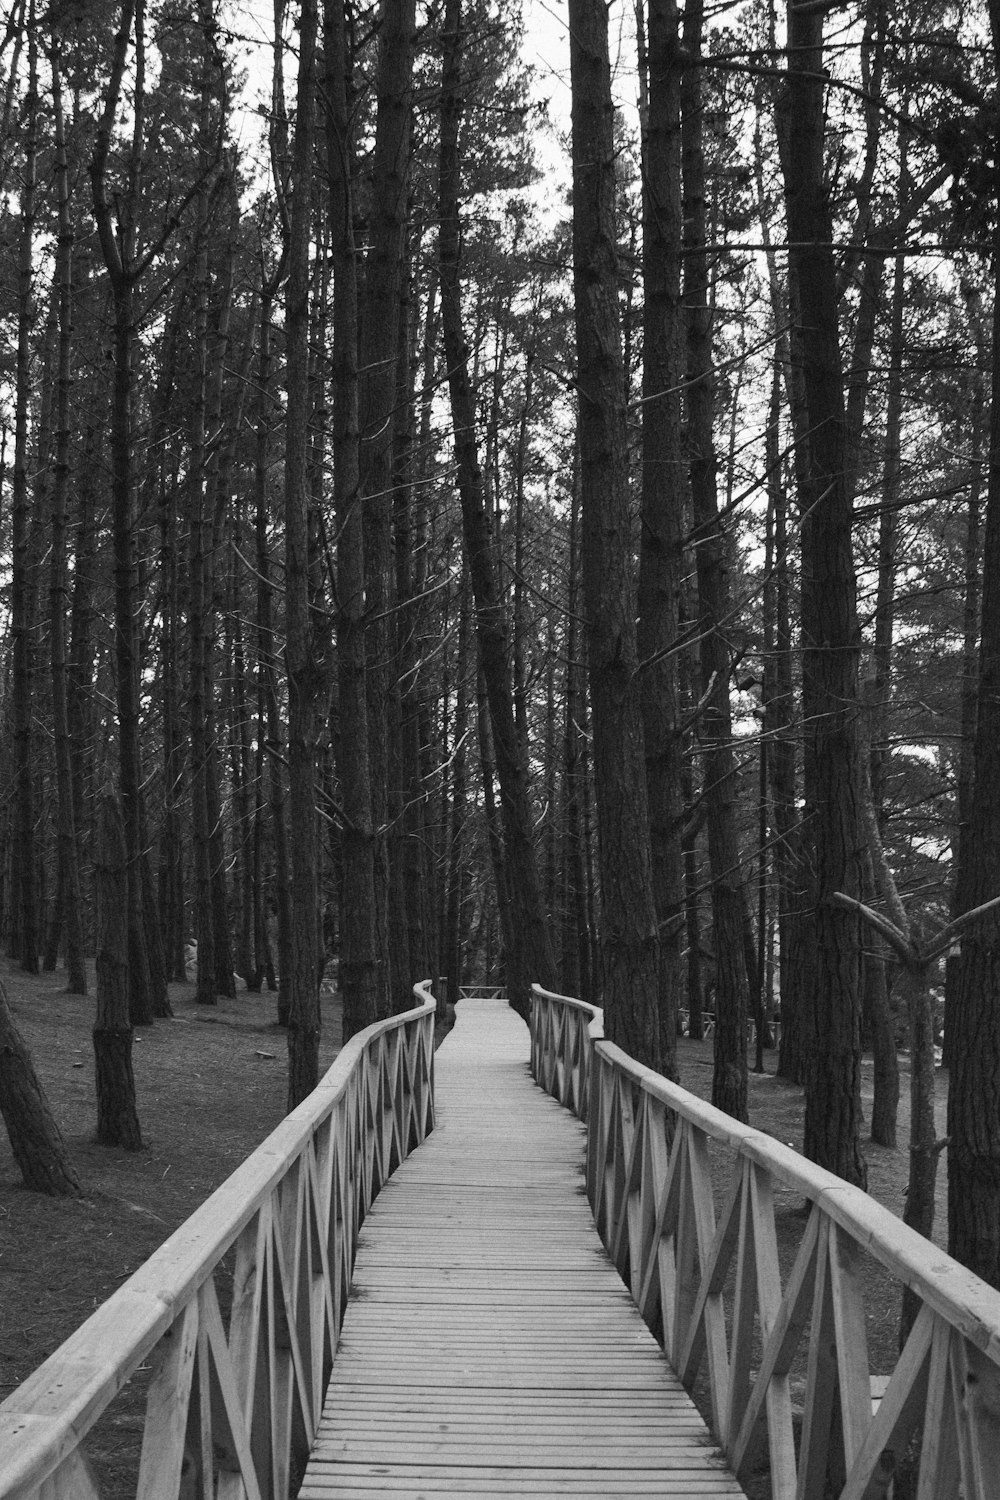 Un puente de madera en medio de un bosque